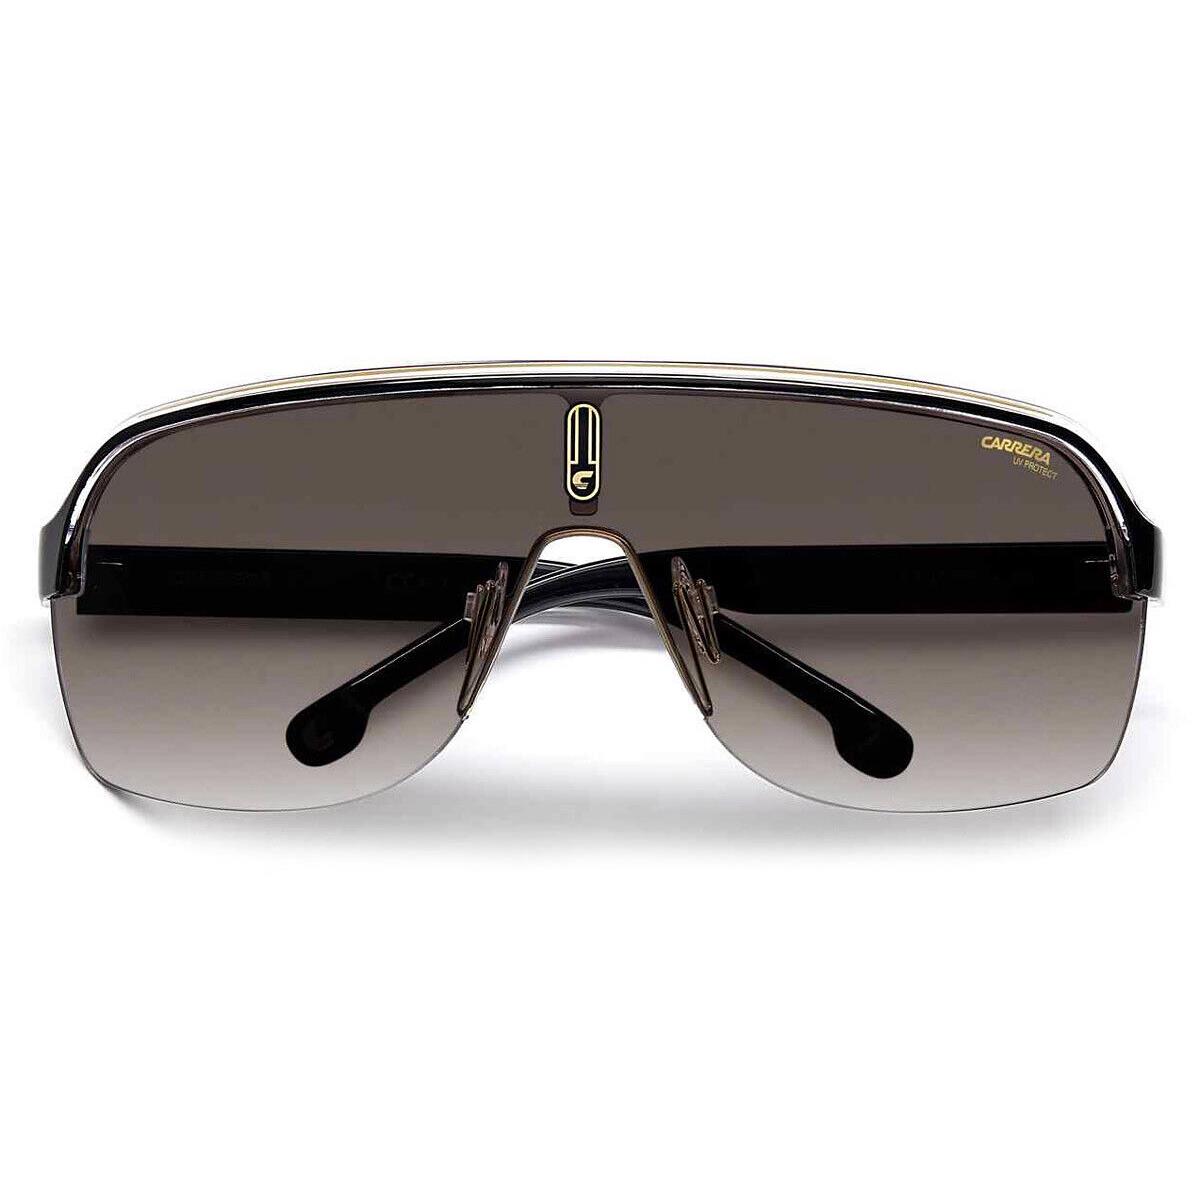 Carrera Topcar 1/N Sunglasses Black Gold Brown Gradient 99